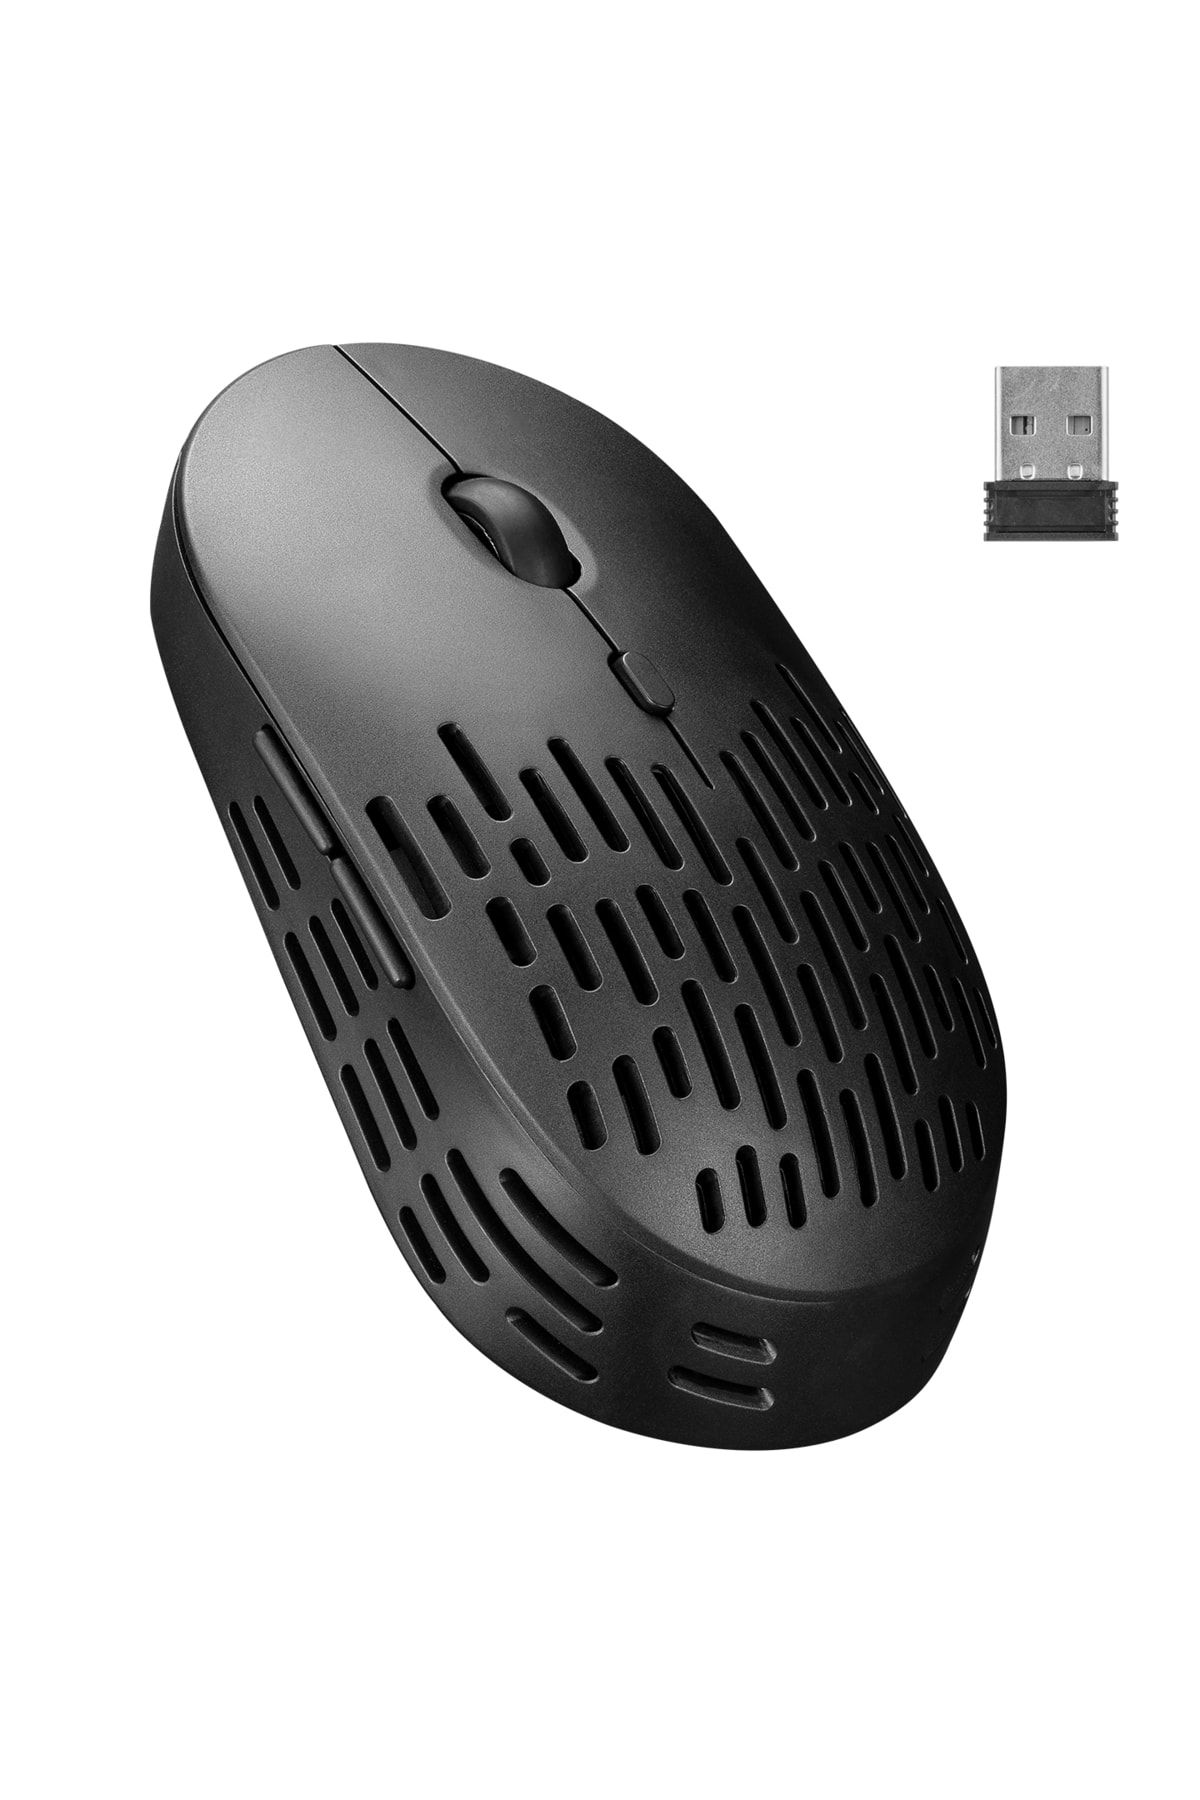 Genel Markalar Siyah 2.4ghz Şarj Edilebilir Tek Renkli 1600DPI Optik Kablosuz Mouse